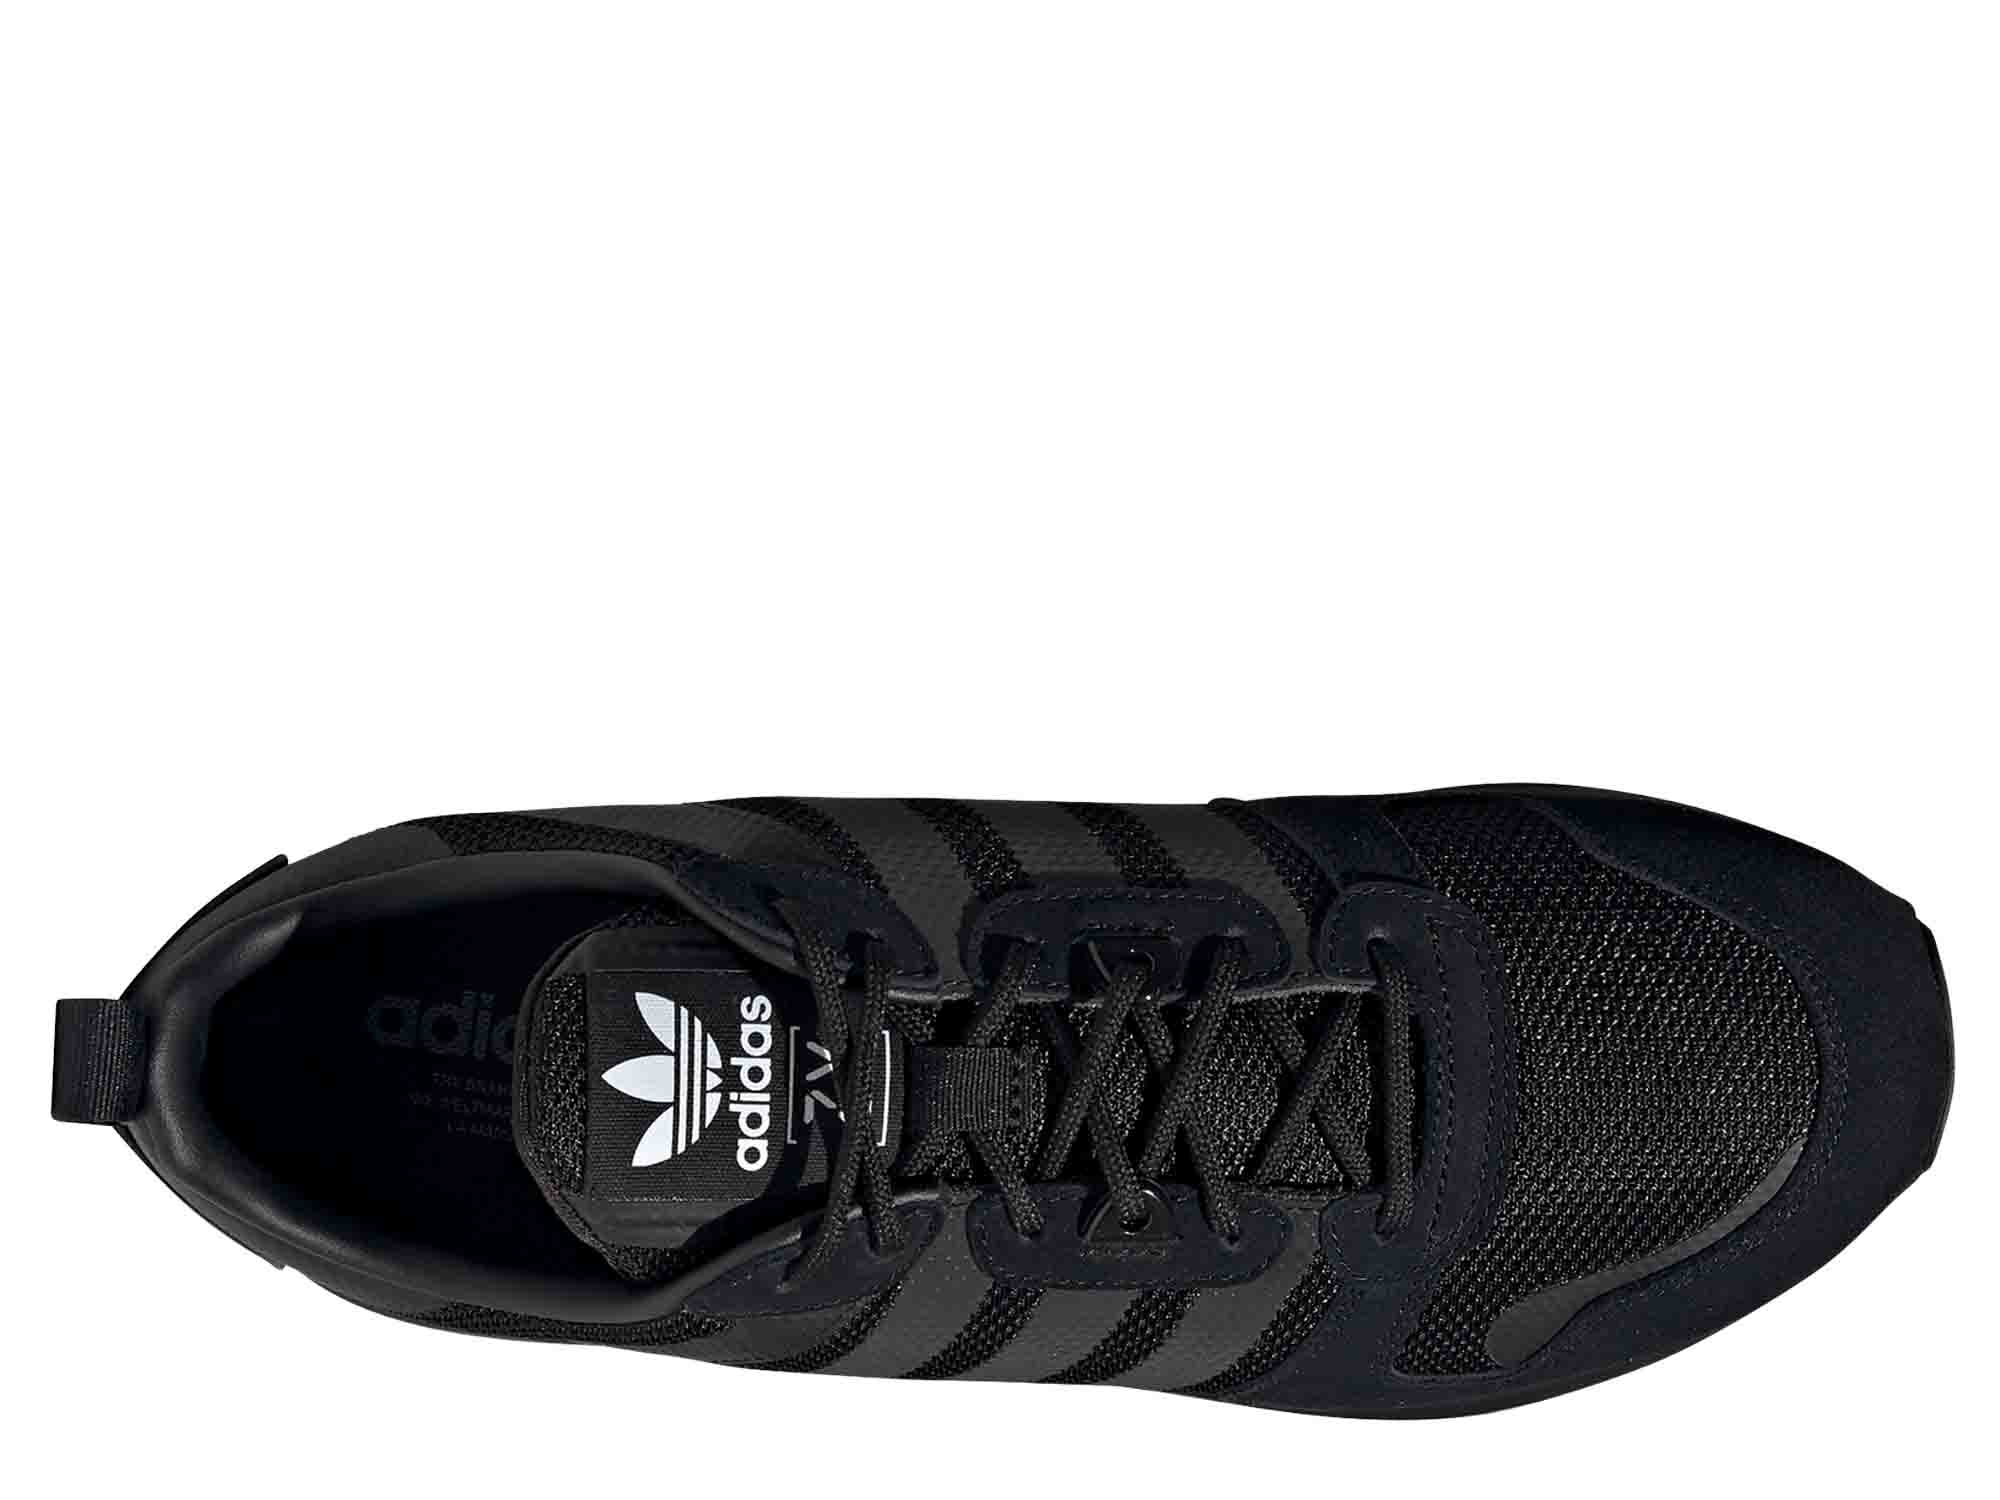 Adidas Originals ZX 700 HD Herren Sneaker